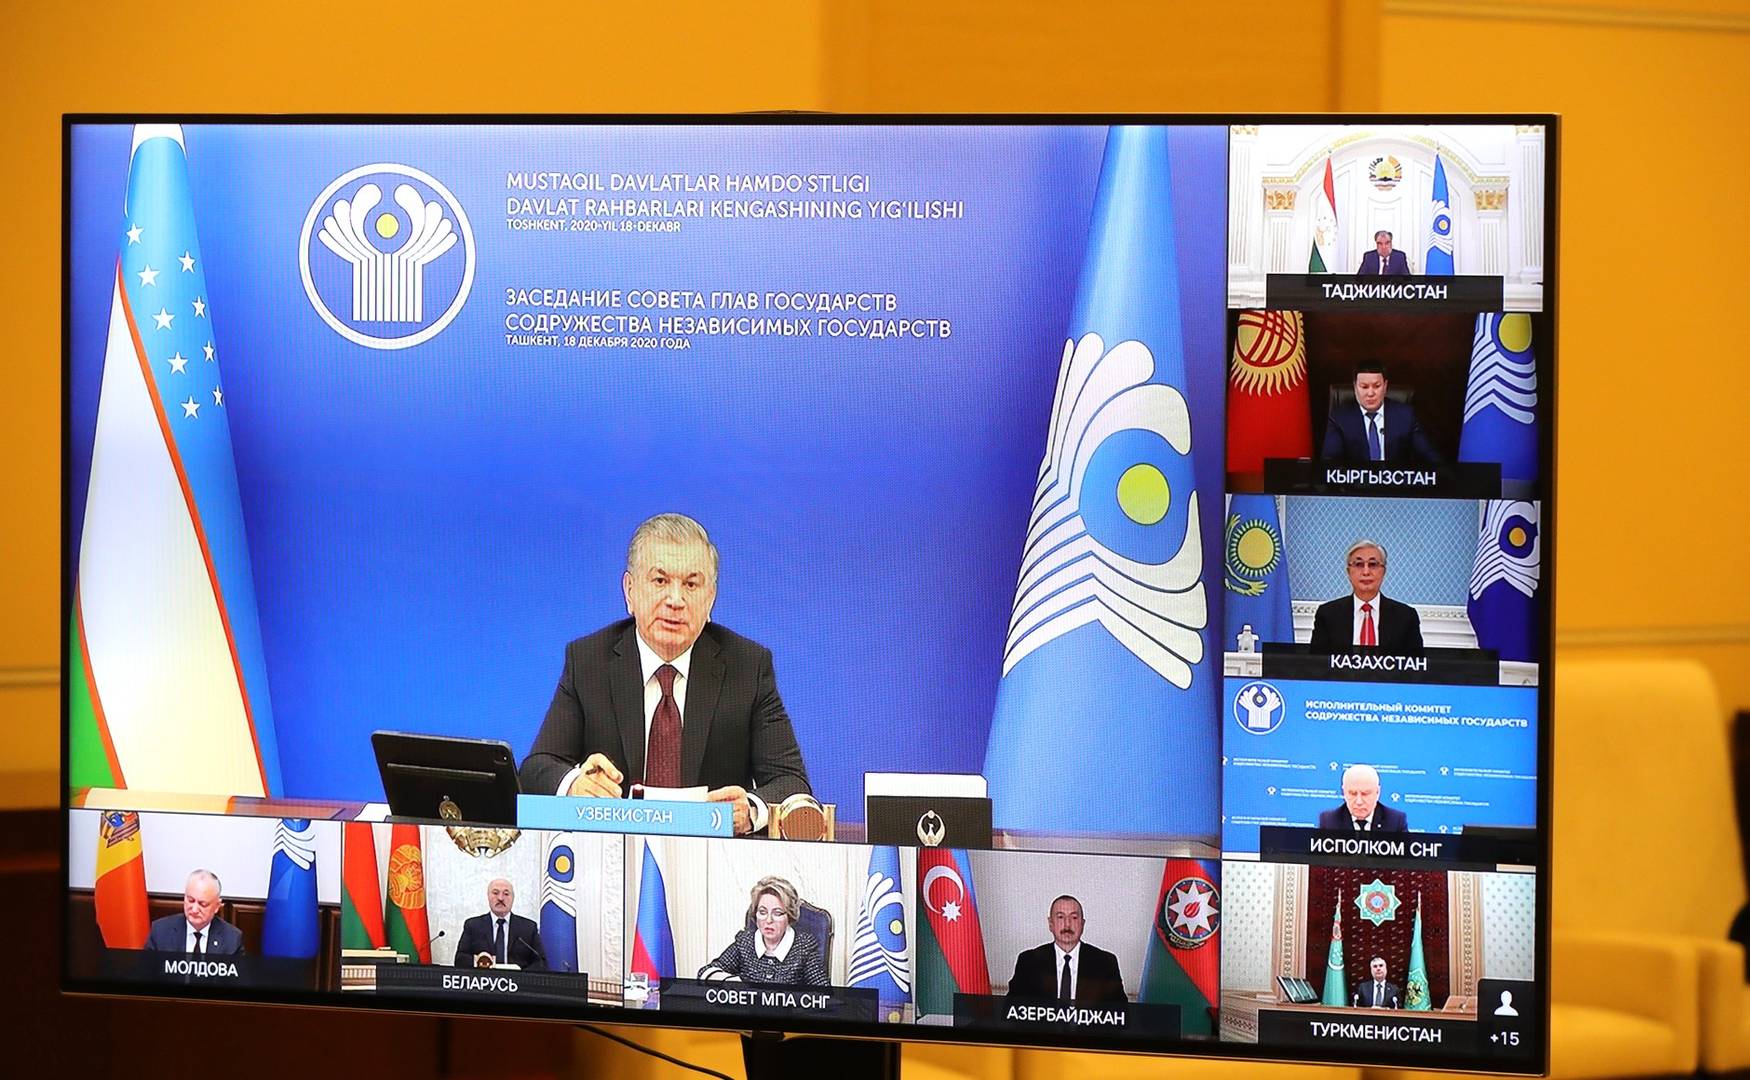 Участники заседания Совета глав государств Содружества Независимых Государств (в режиме видеоконференции)